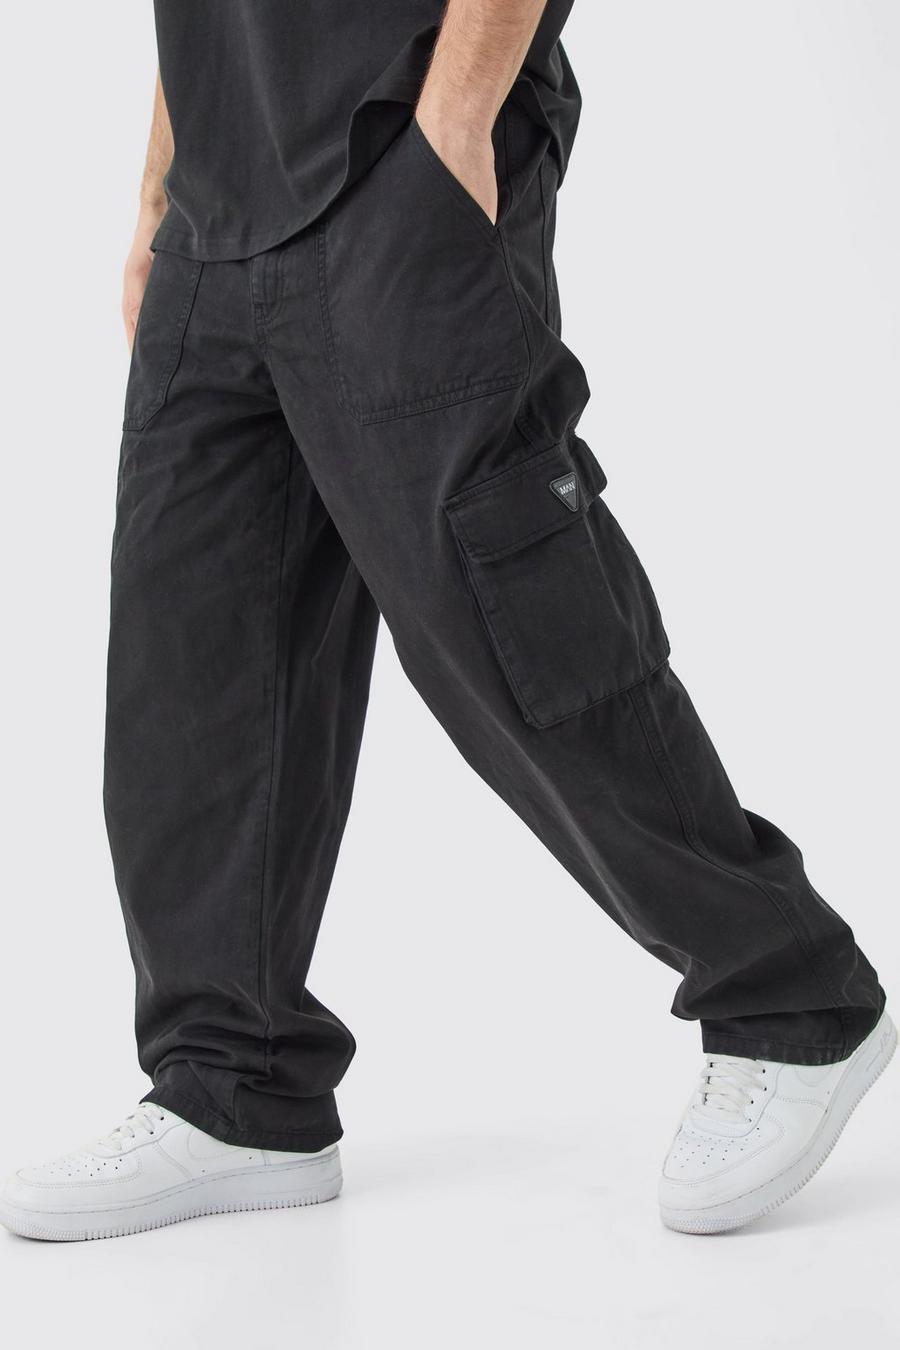 Pantalón cargo con cintura fija, cremallera y etiqueta de goma, Black